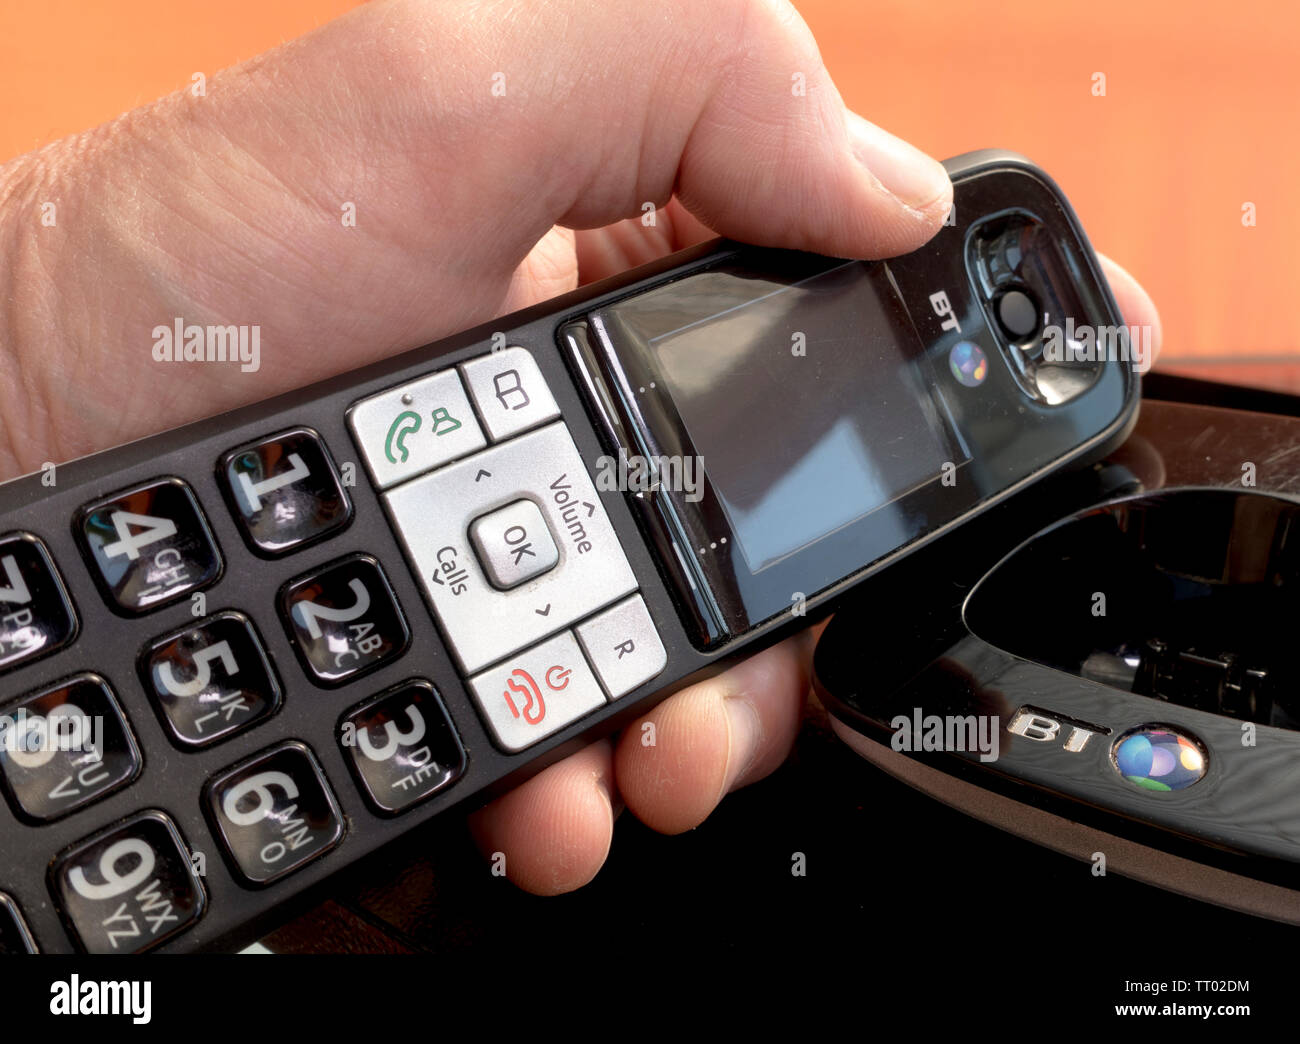 Des Menschen Hand mit einem BT Freisprecheinrichtung Festnetz Telefon neben der Wiege, um einen Anruf zu tätigen. Stockfoto